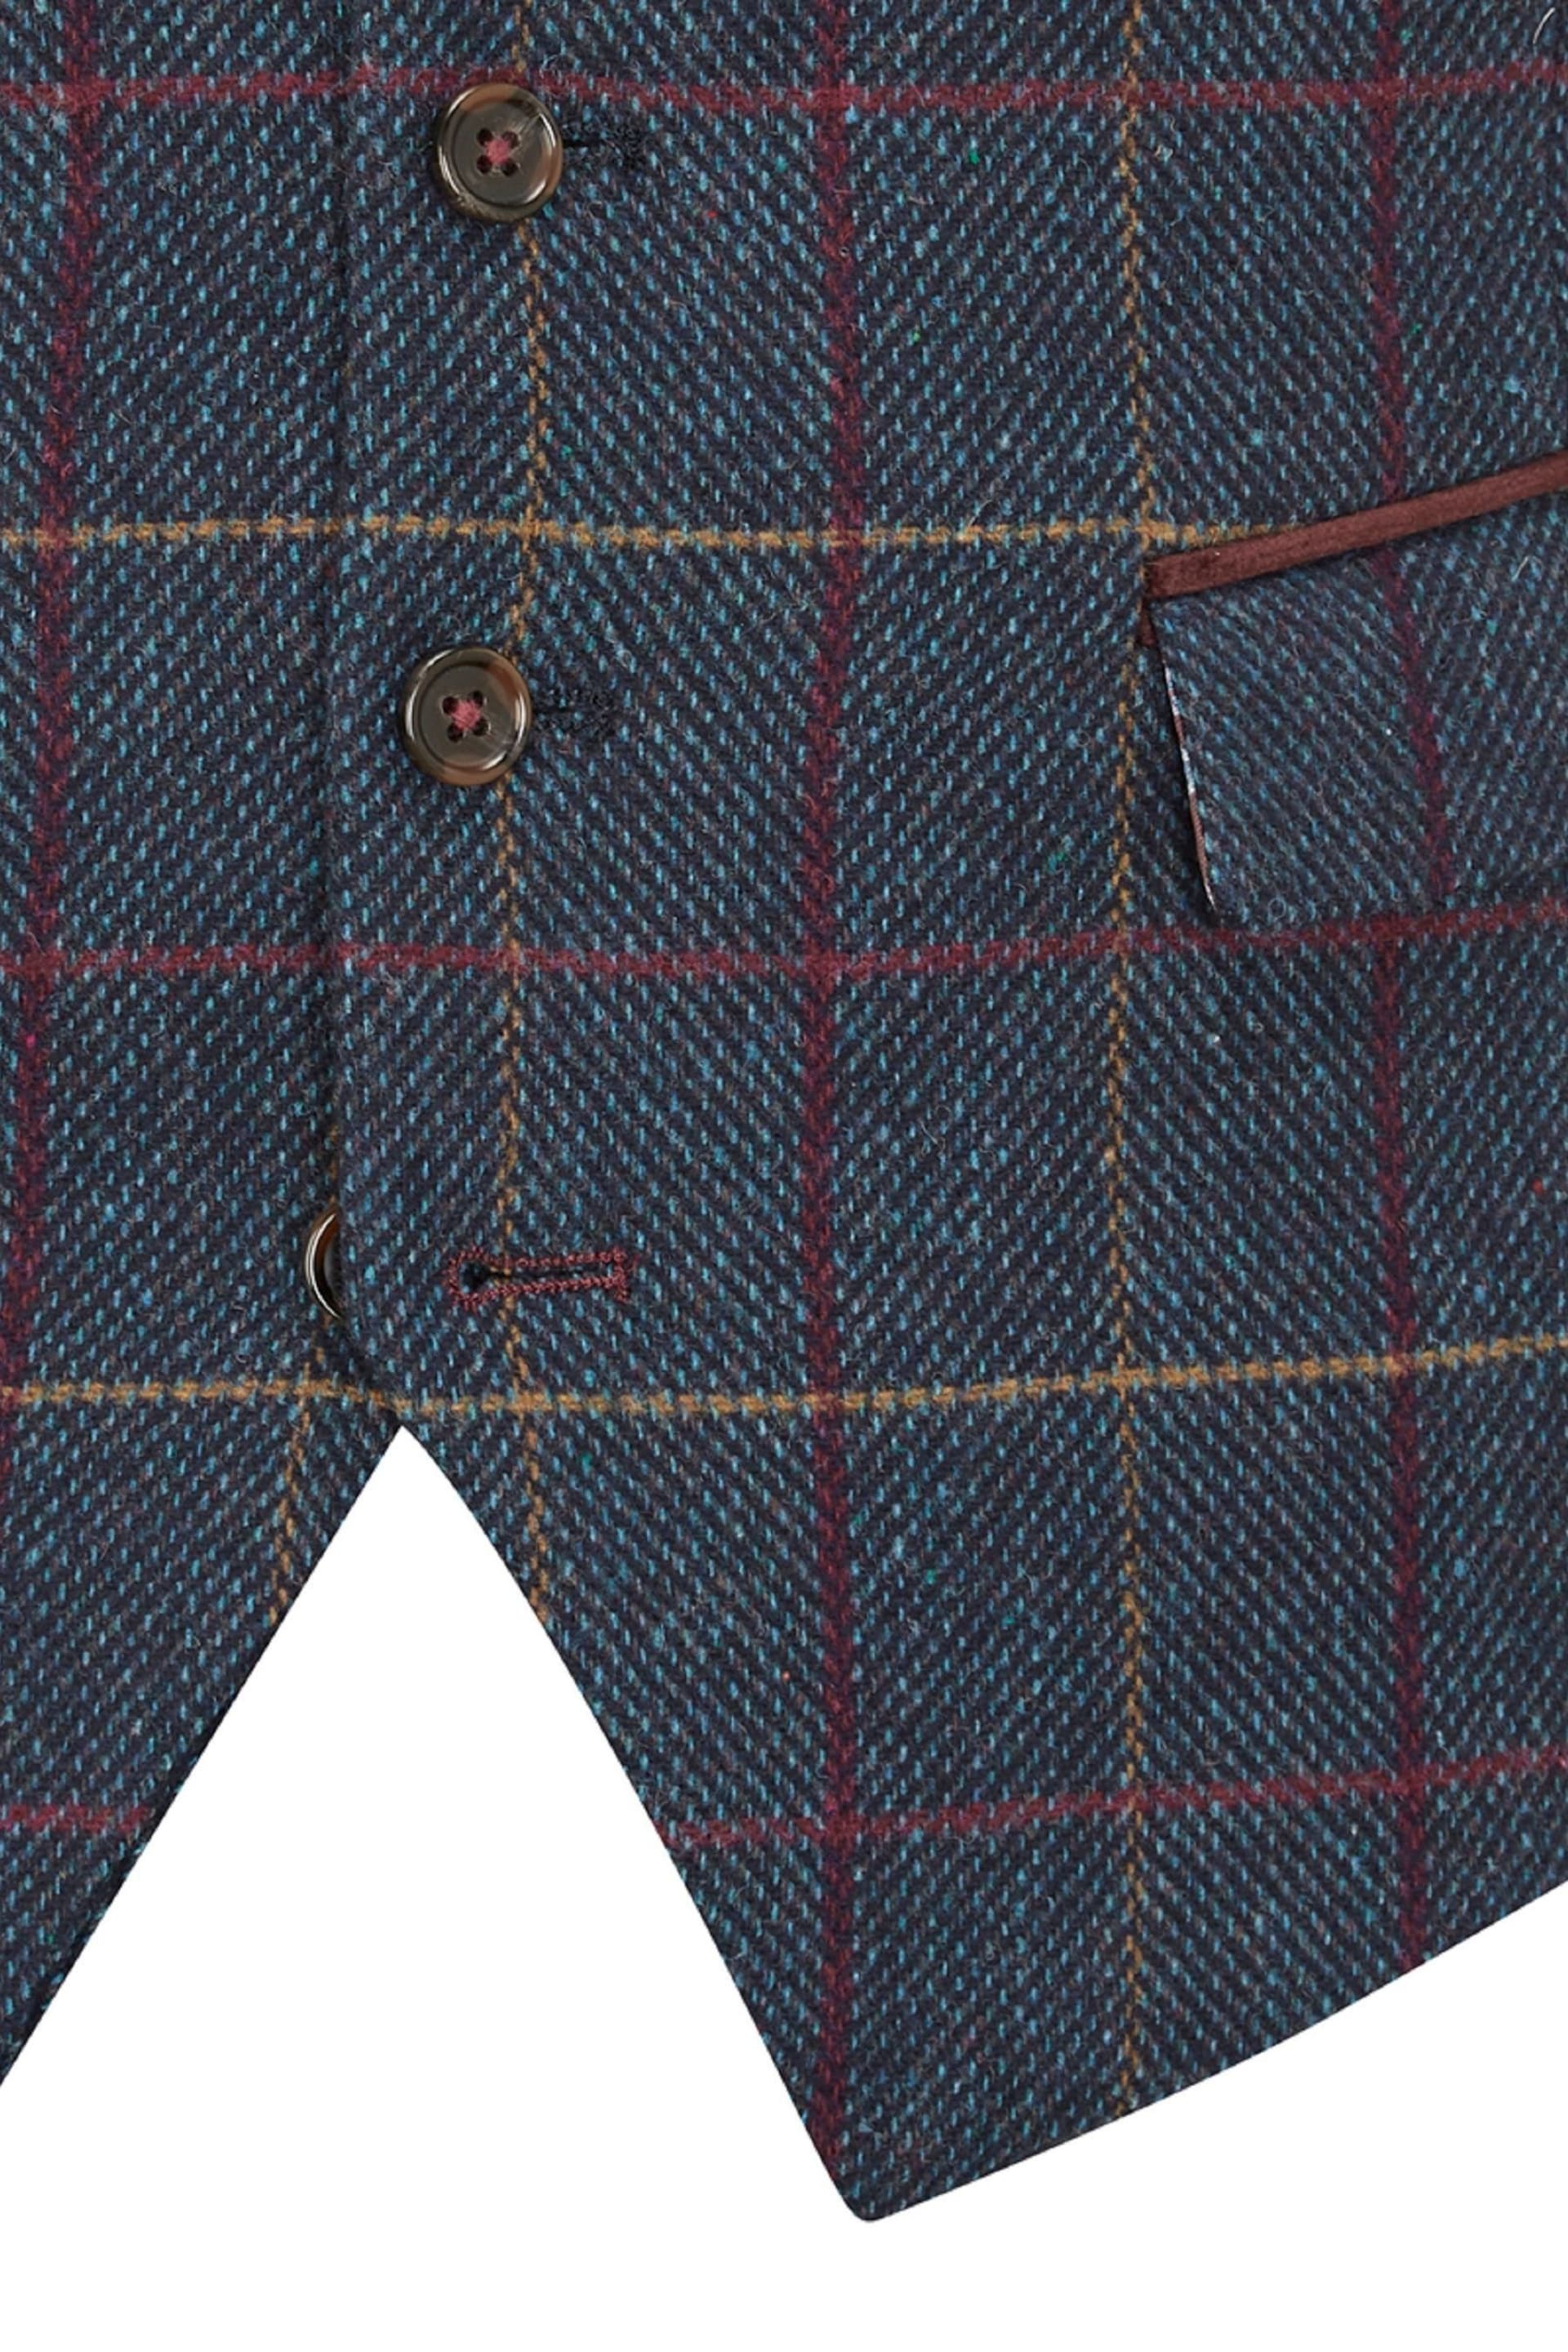 Skopes Doyle Navy Blue Tweed Wool Blend Suit Waistcoat - Image 5 of 5